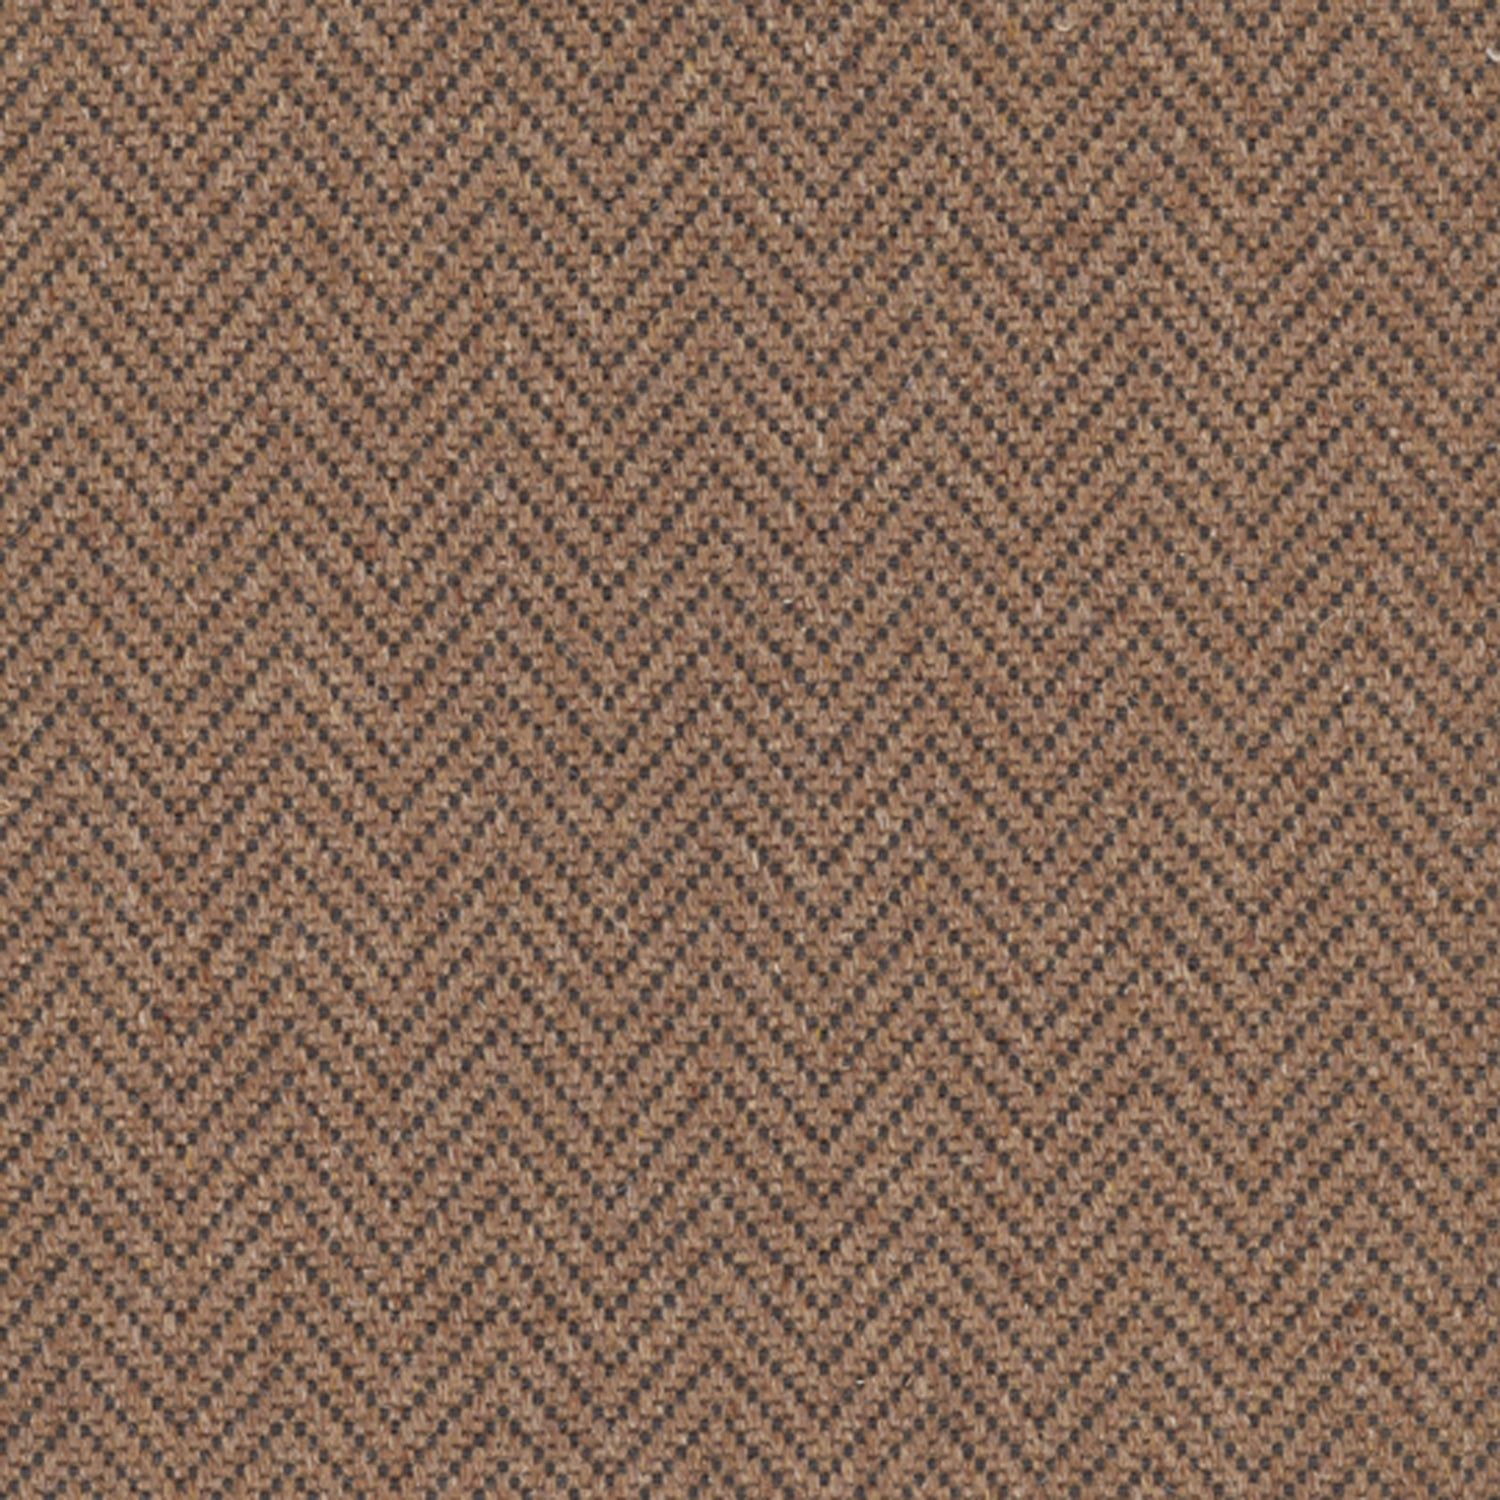 Wool broadloom carpet swatch in a herringbone weave in brown and charcoal.